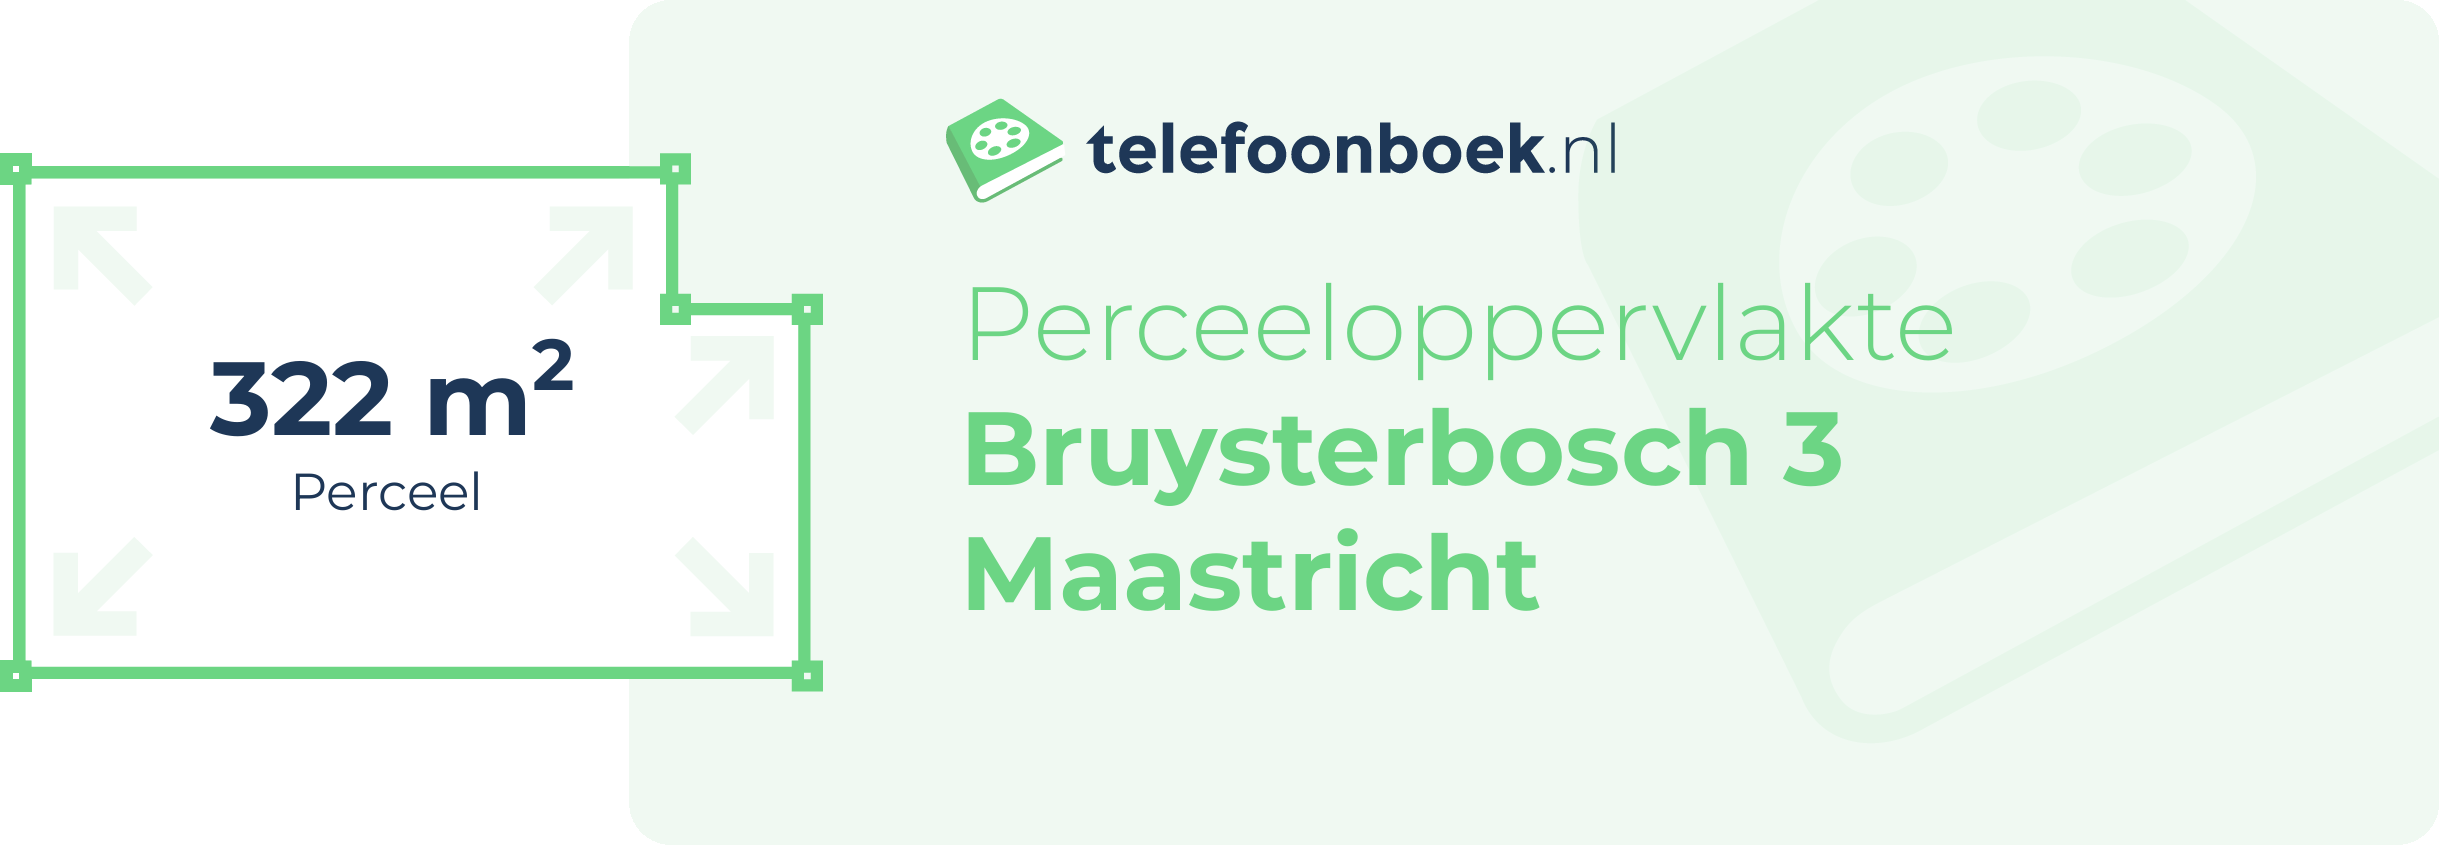 Perceeloppervlakte Bruysterbosch 3 Maastricht